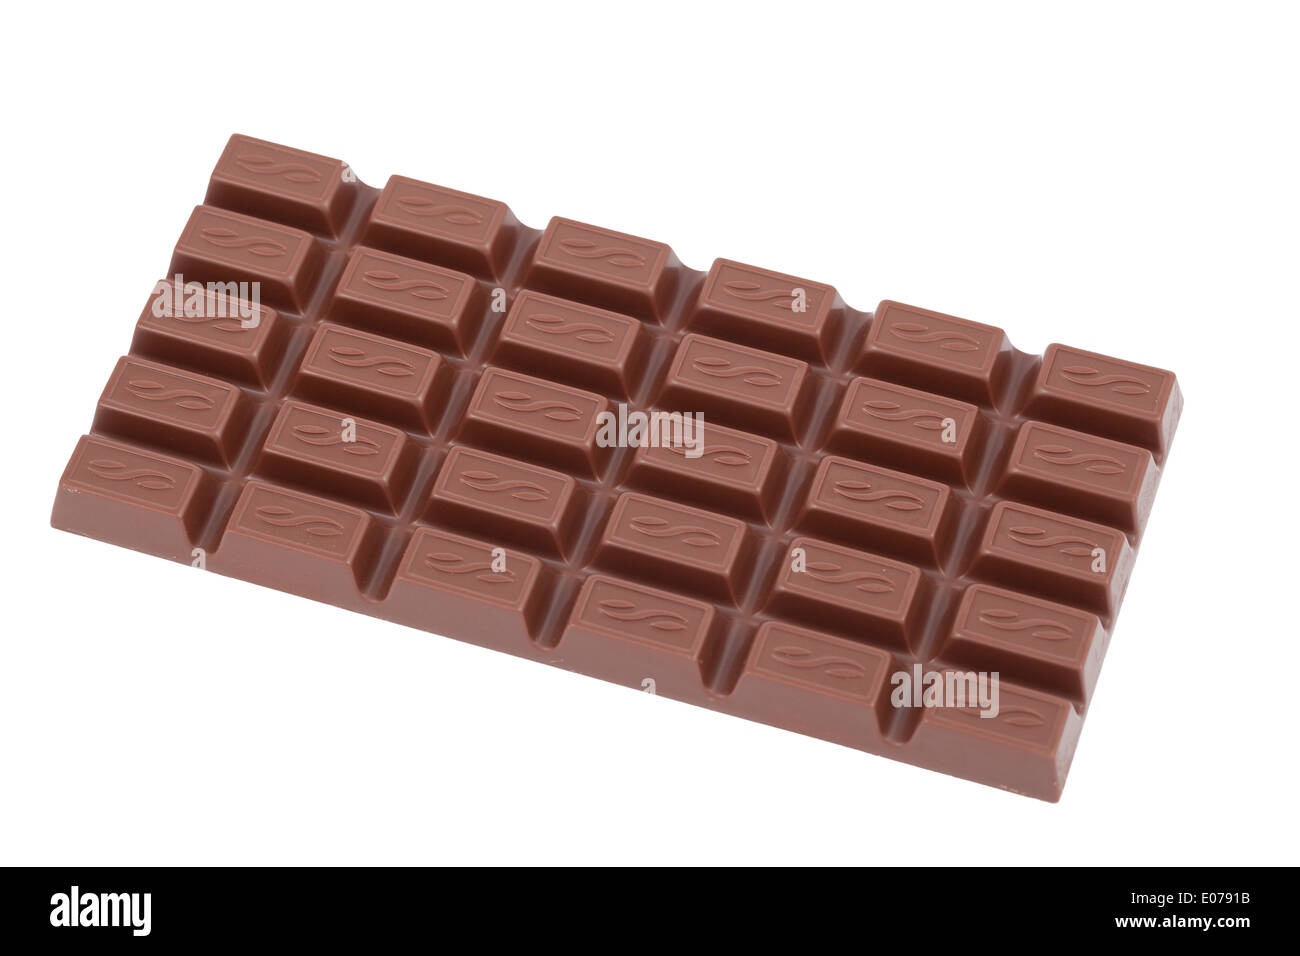 whole bar of chocolate on white background Stock Photo